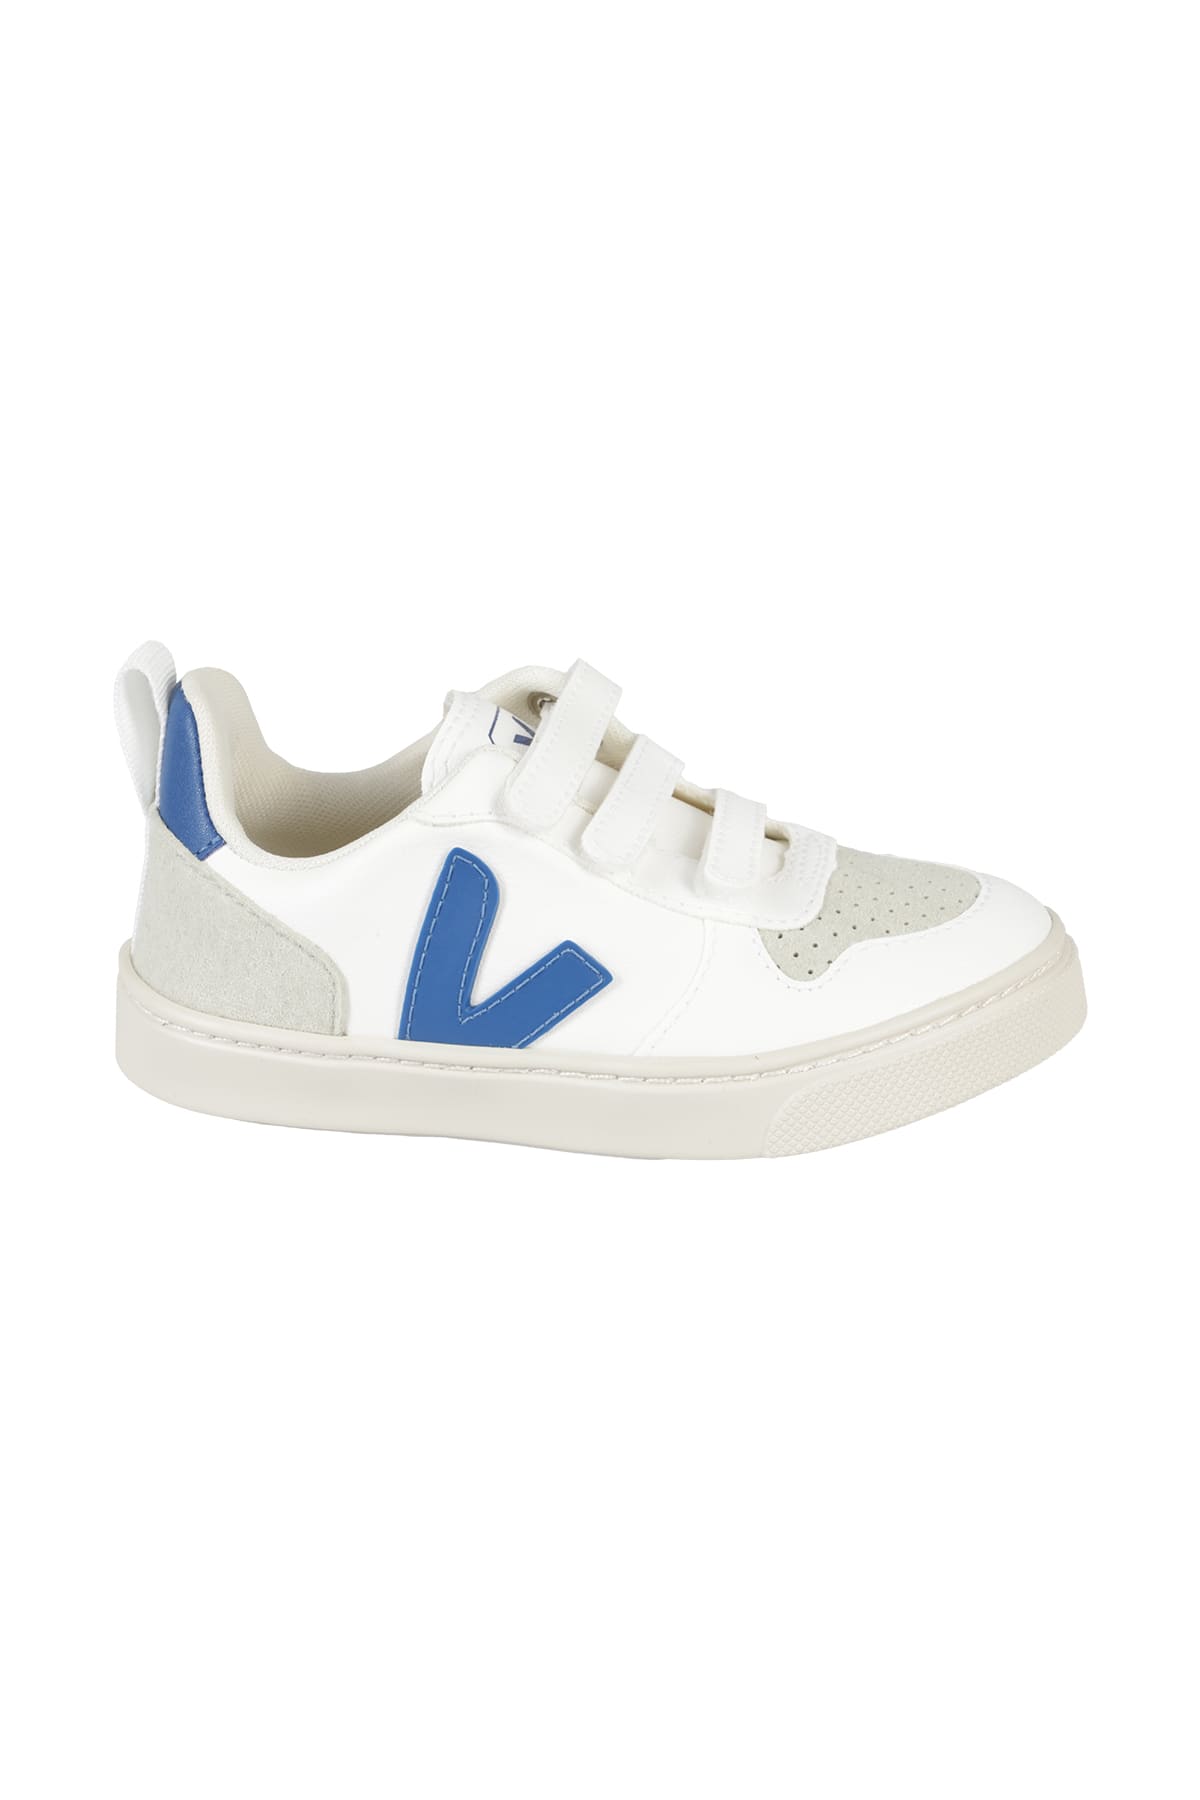 Veja Kids' Shoes In White Indigo